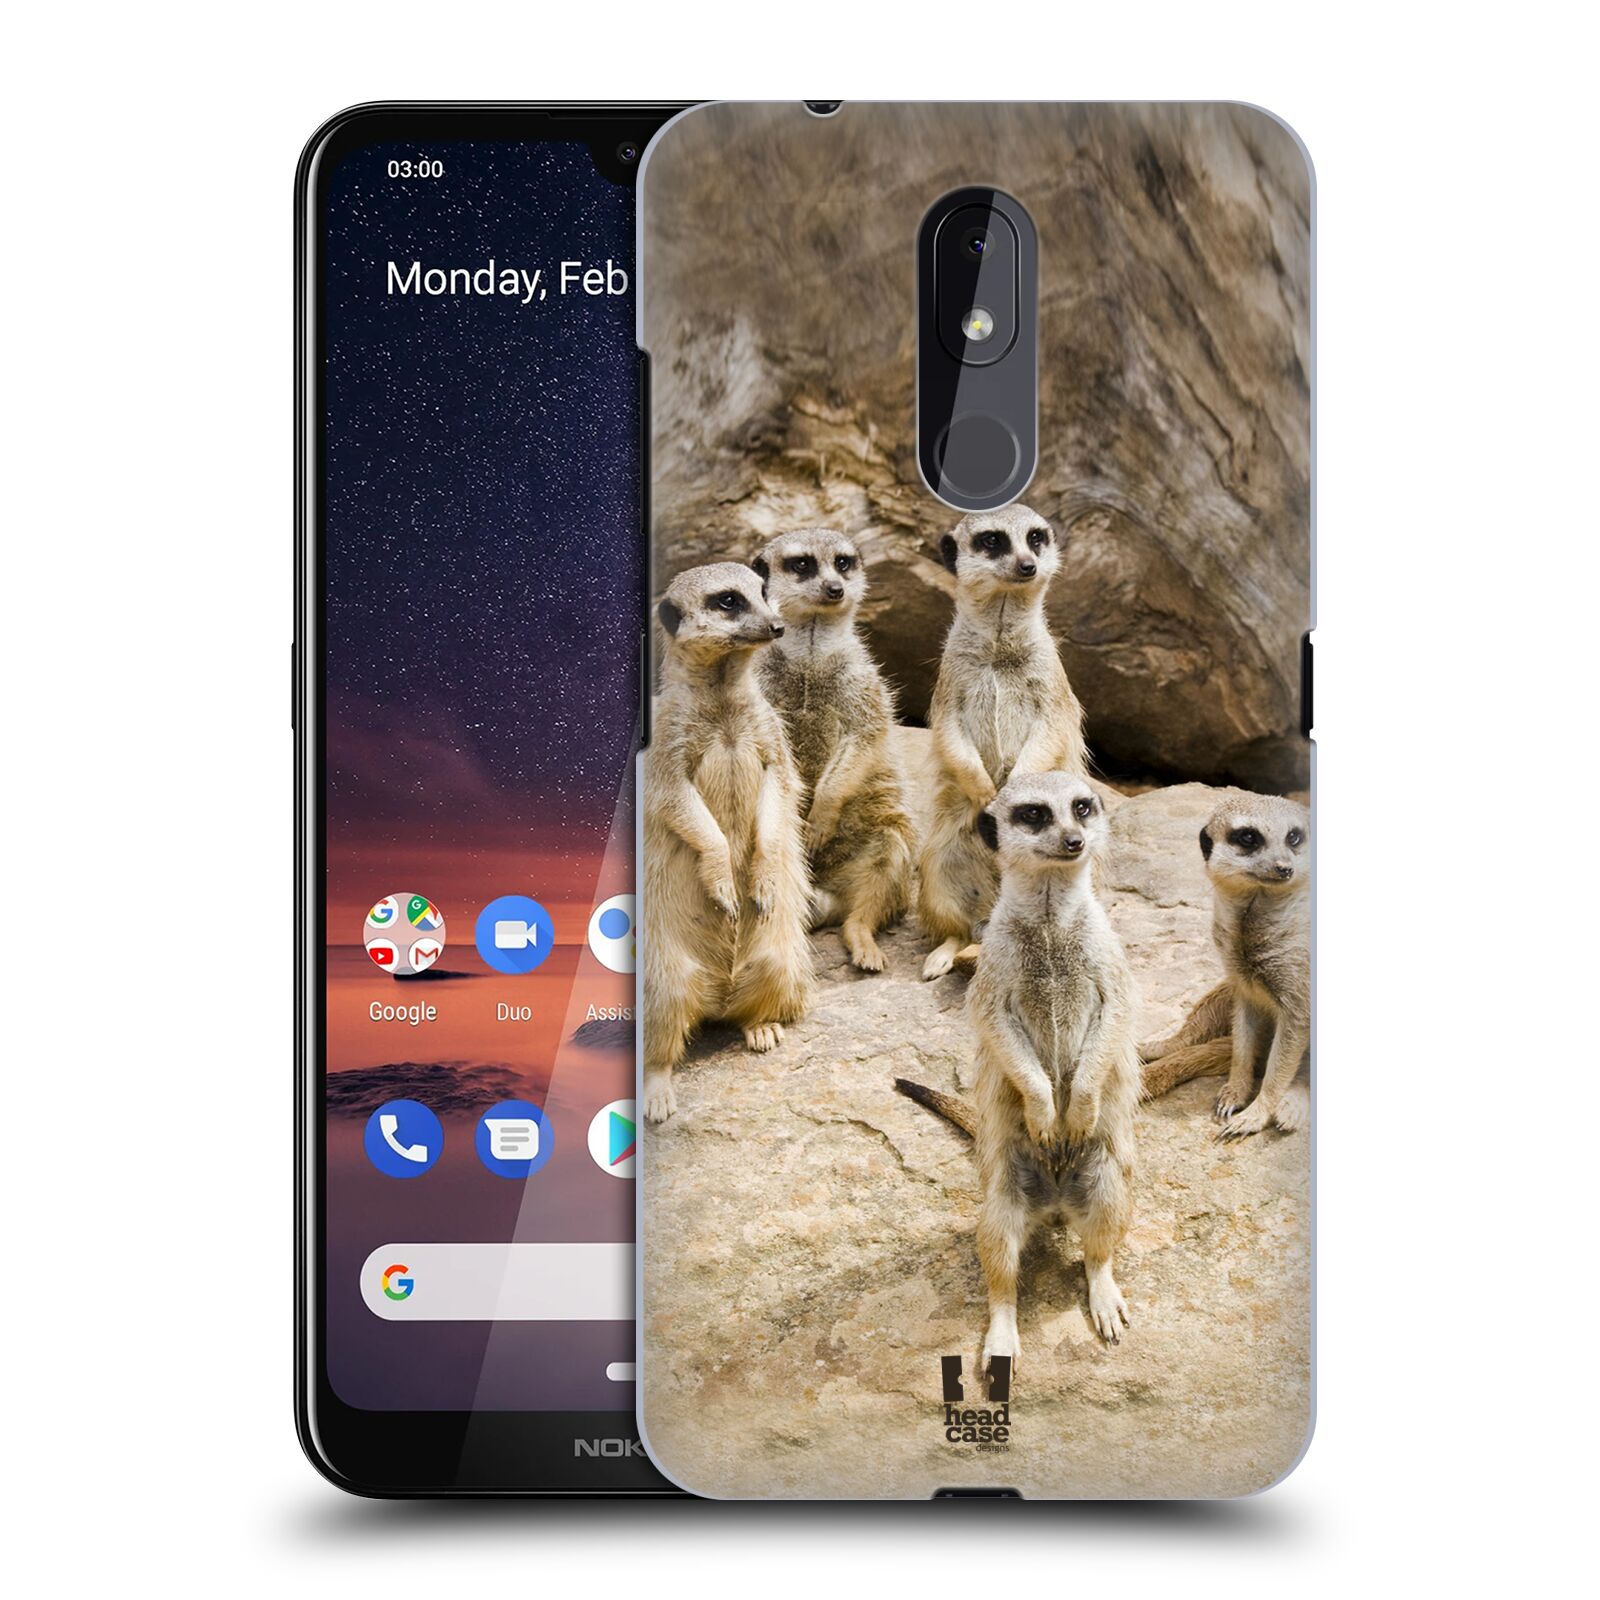 Pouzdro na mobil Nokia 3.2 - HEAD CASE - vzor Divočina, Divoký život a zvířata foto SURIKATA